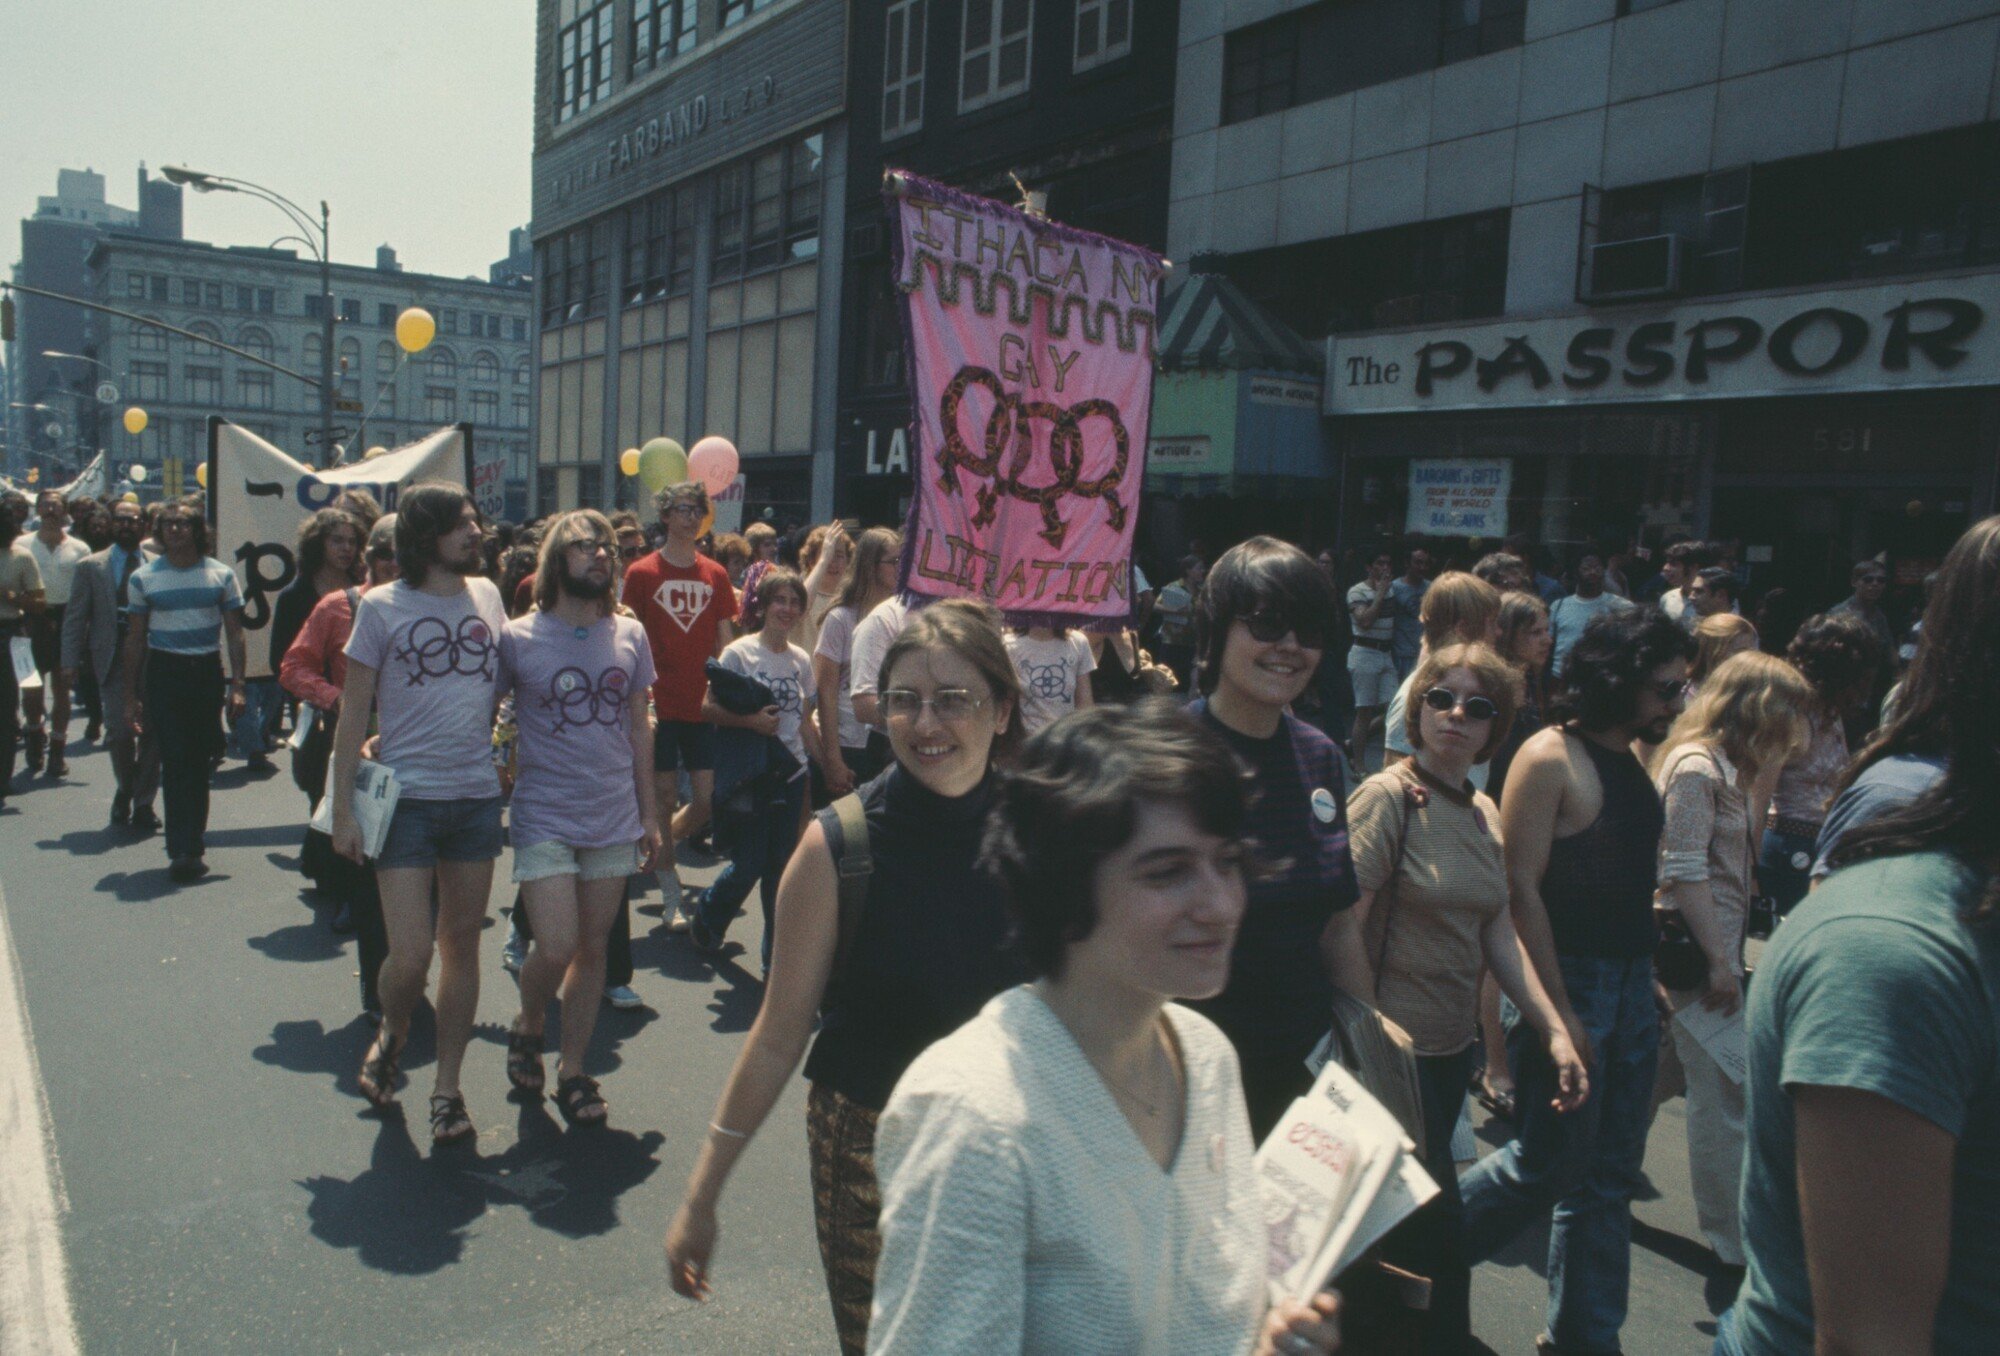 1971: Roční výročí stonewallských událostí si lidé připomněli pochody v New Yorku, Chicagu, San Franciscu a Los Angeles. Na fotce je zachycený rok 1971 a Christopher Street Gay Liberation Day, později nazvaný Gay Pride Day. Ten samý rok se pochody přesunuly i do jiných zemí včetně Londýna, Paříže nebo Stockholmu.